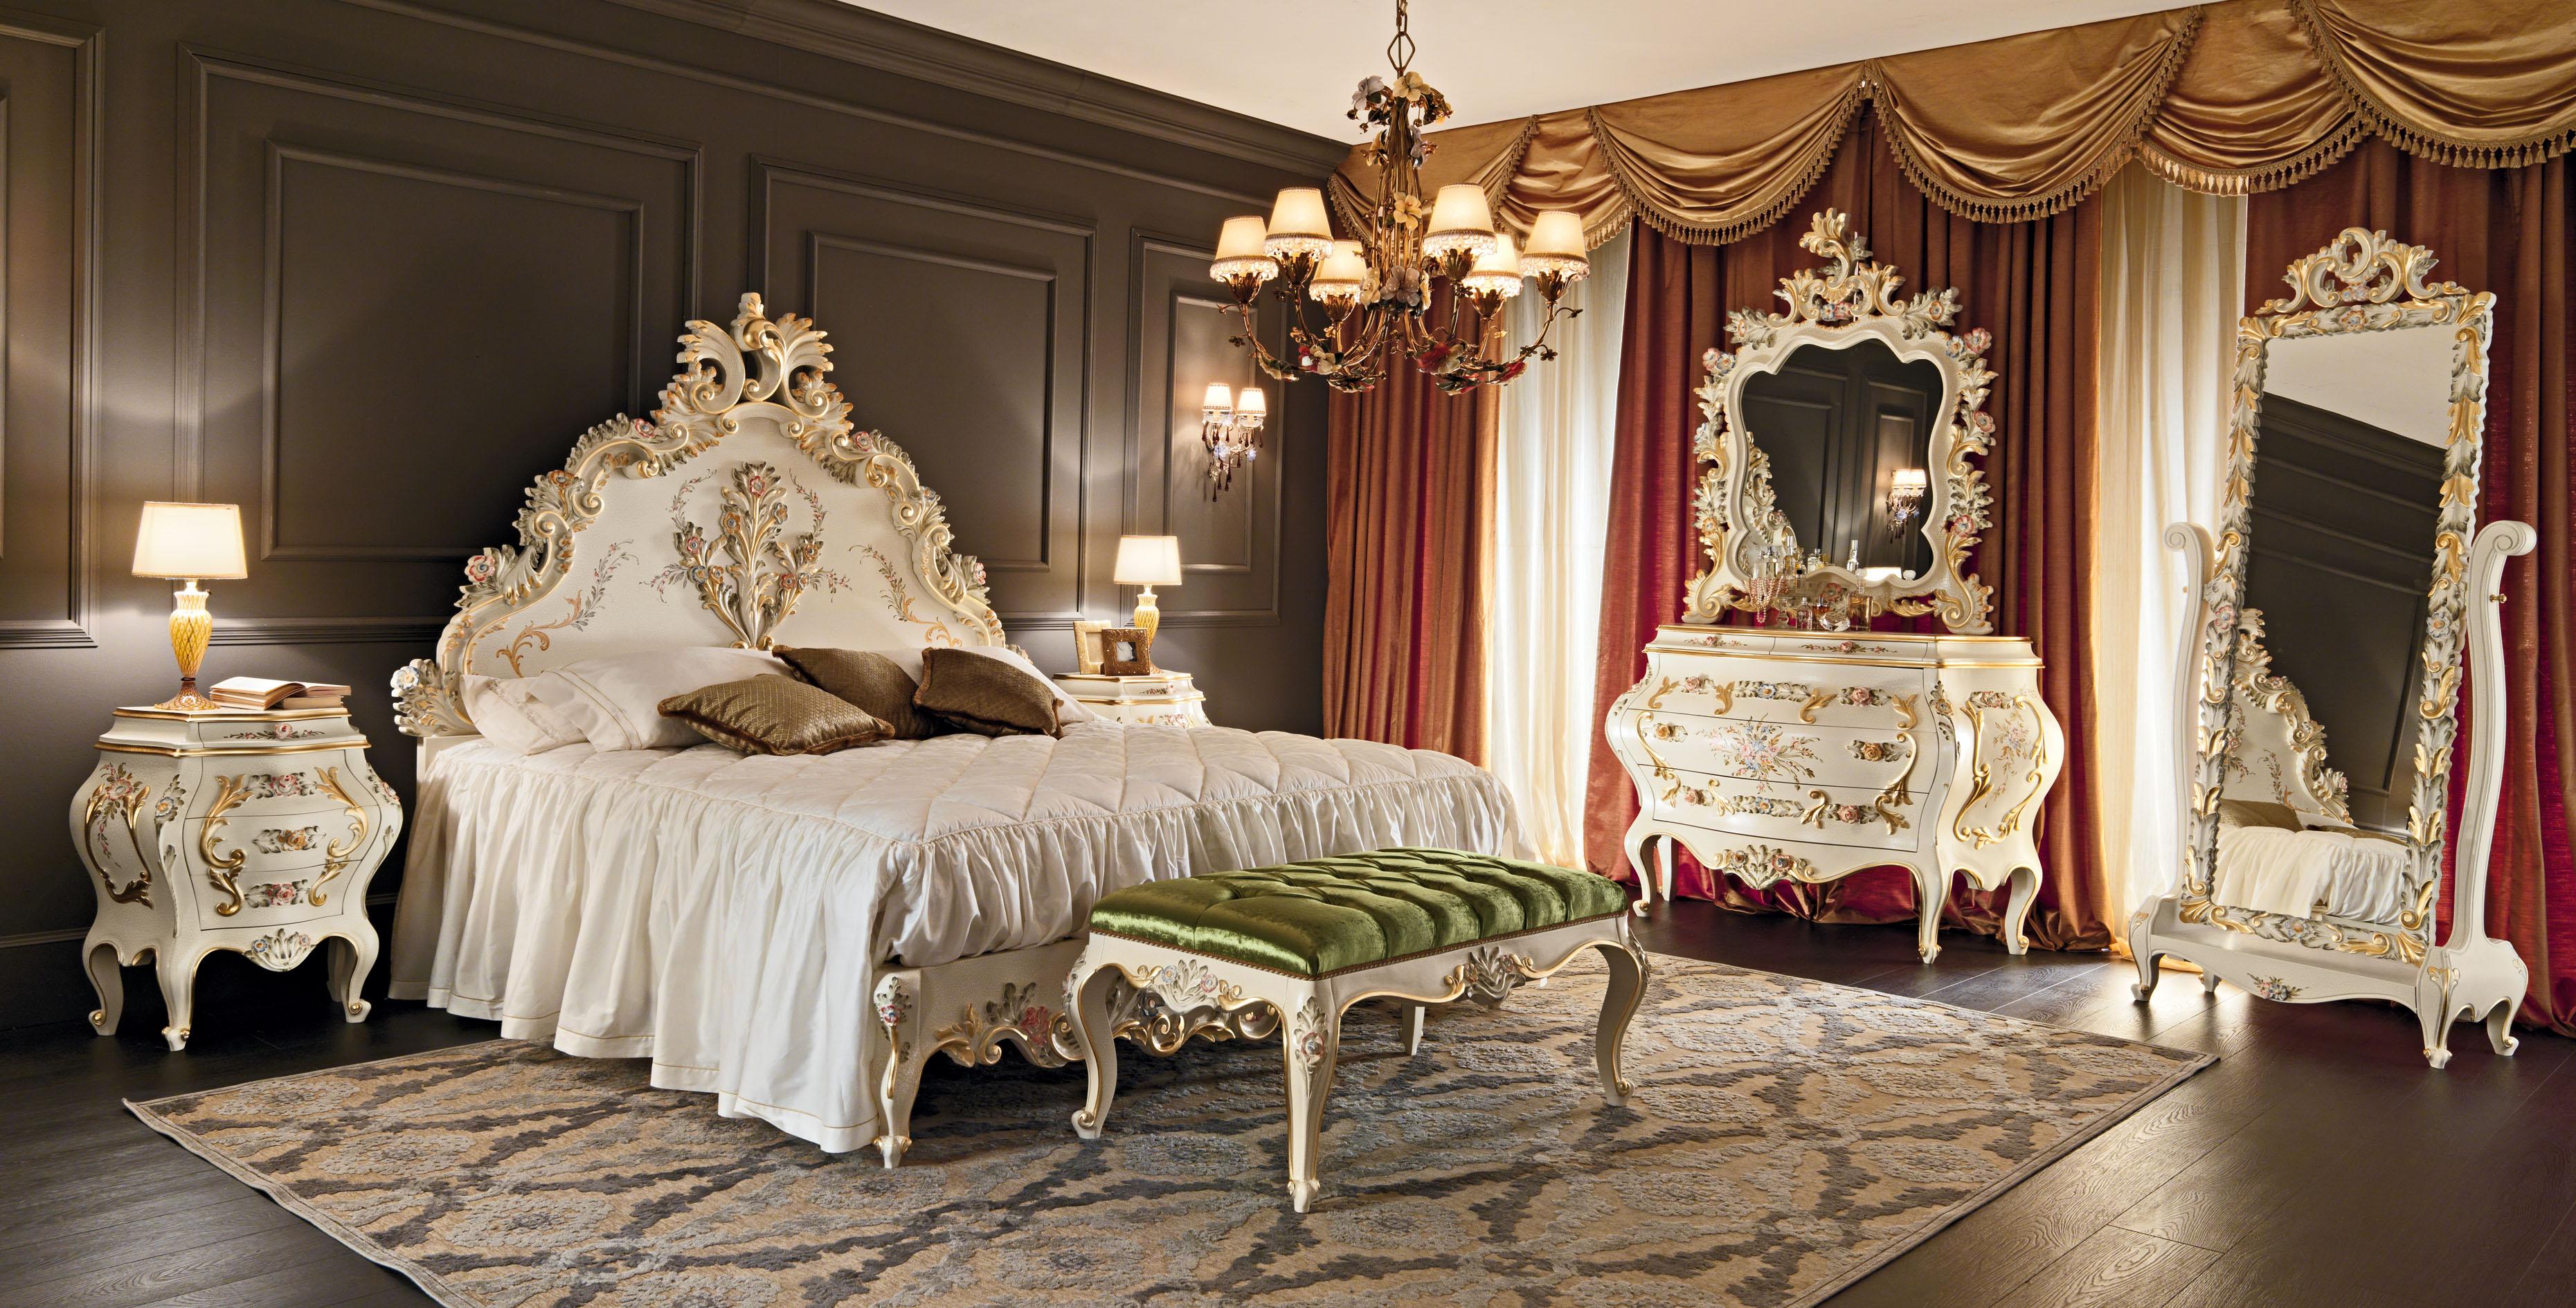 Cette surprenante banquette de lit baroque sculptée de Modenese Luxury Interiors, producteur italien de meubles proche de Venise, est une pièce classique mais actuelle pour un décor de luxe, à placer de préférence dans les chambres à coucher, les